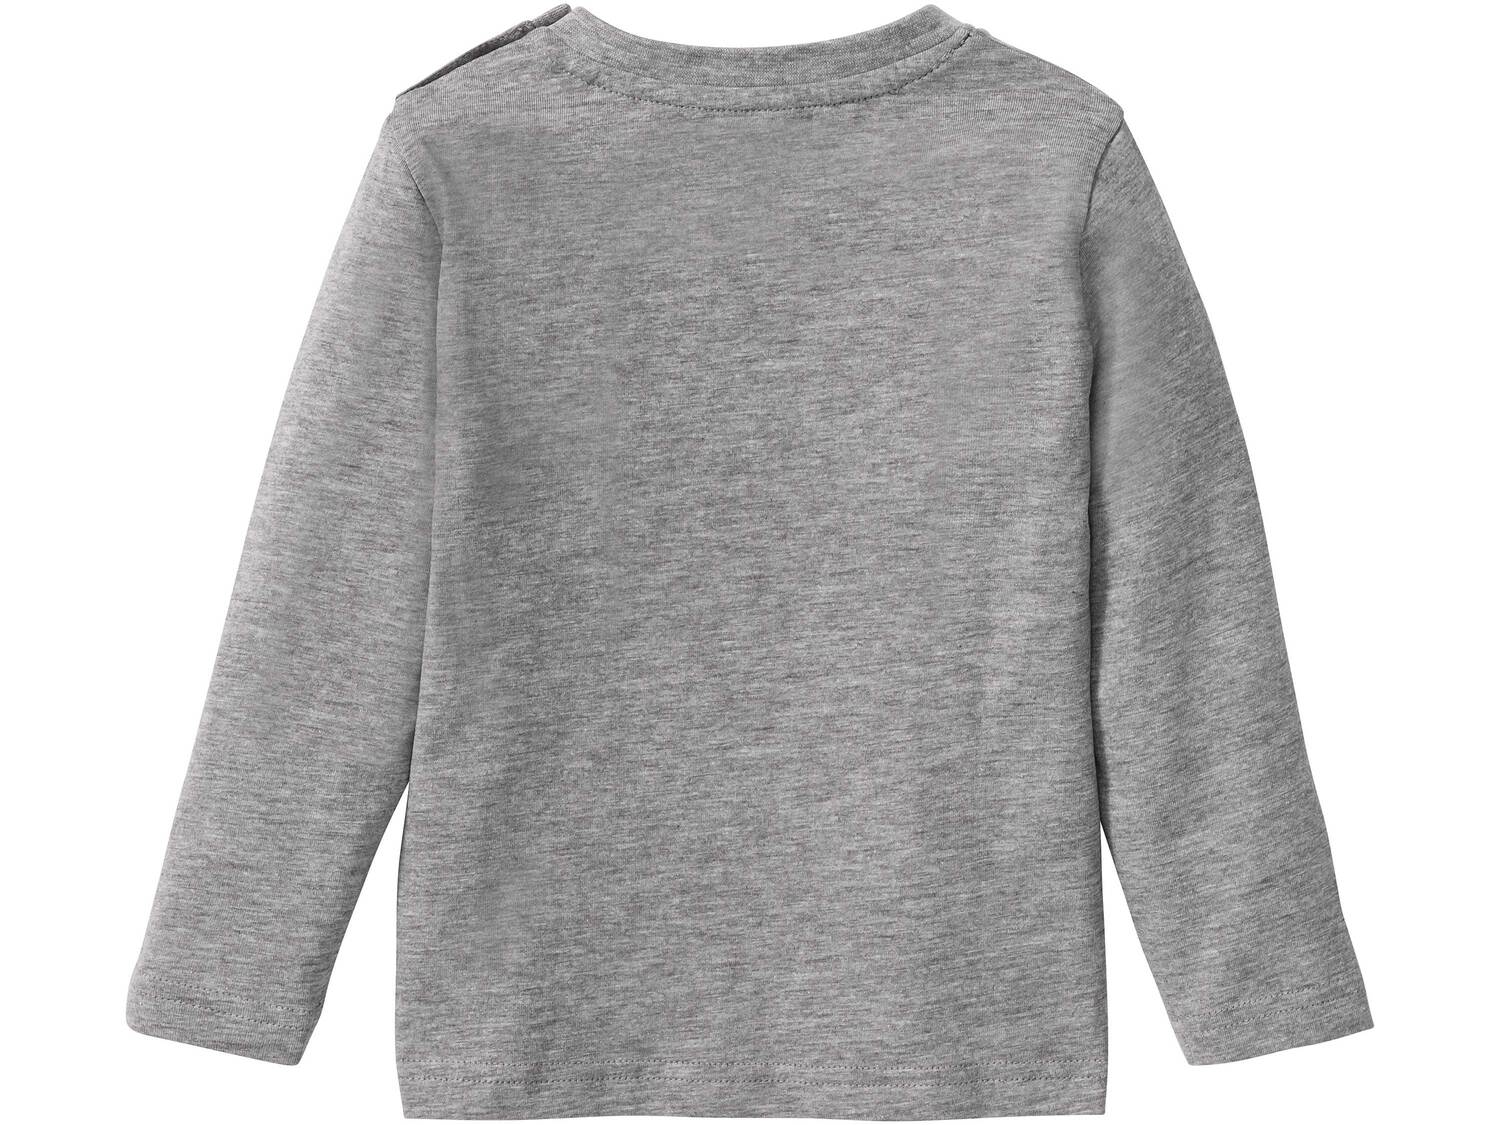 Koszulka z cekinami Lupilu, cena 14,99 PLN 
- rozmiary: 86-116
- 90% bawełny, 10% ...